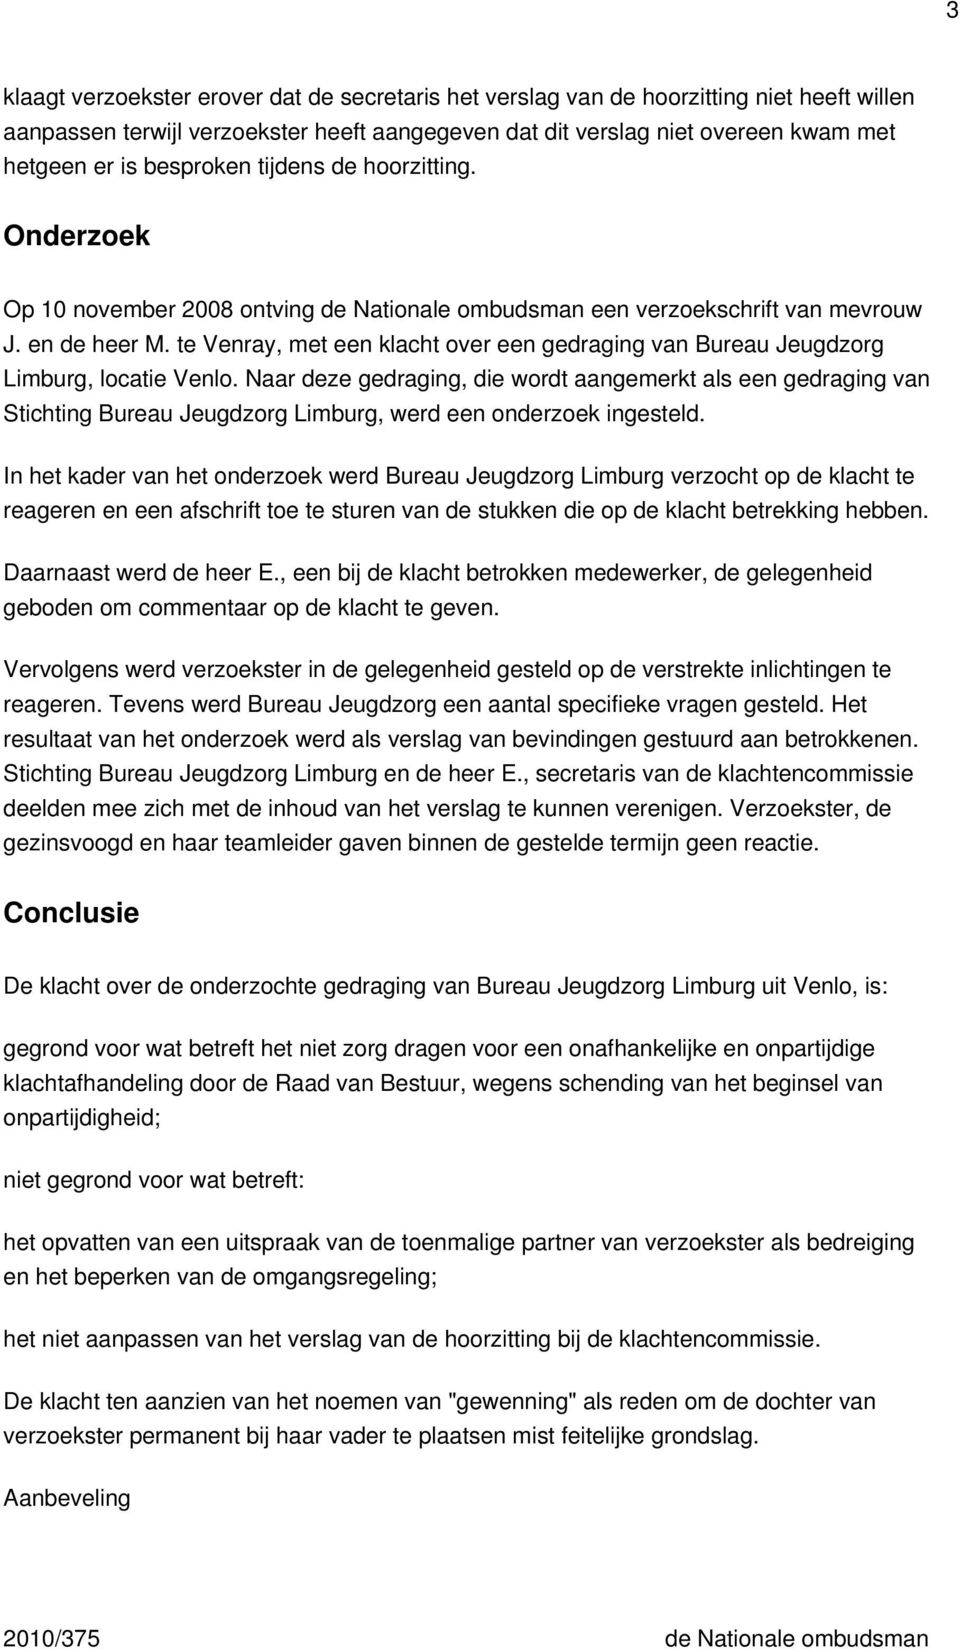 te Venray, met een klacht over een gedraging van Bureau Jeugdzorg Limburg, locatie Venlo.